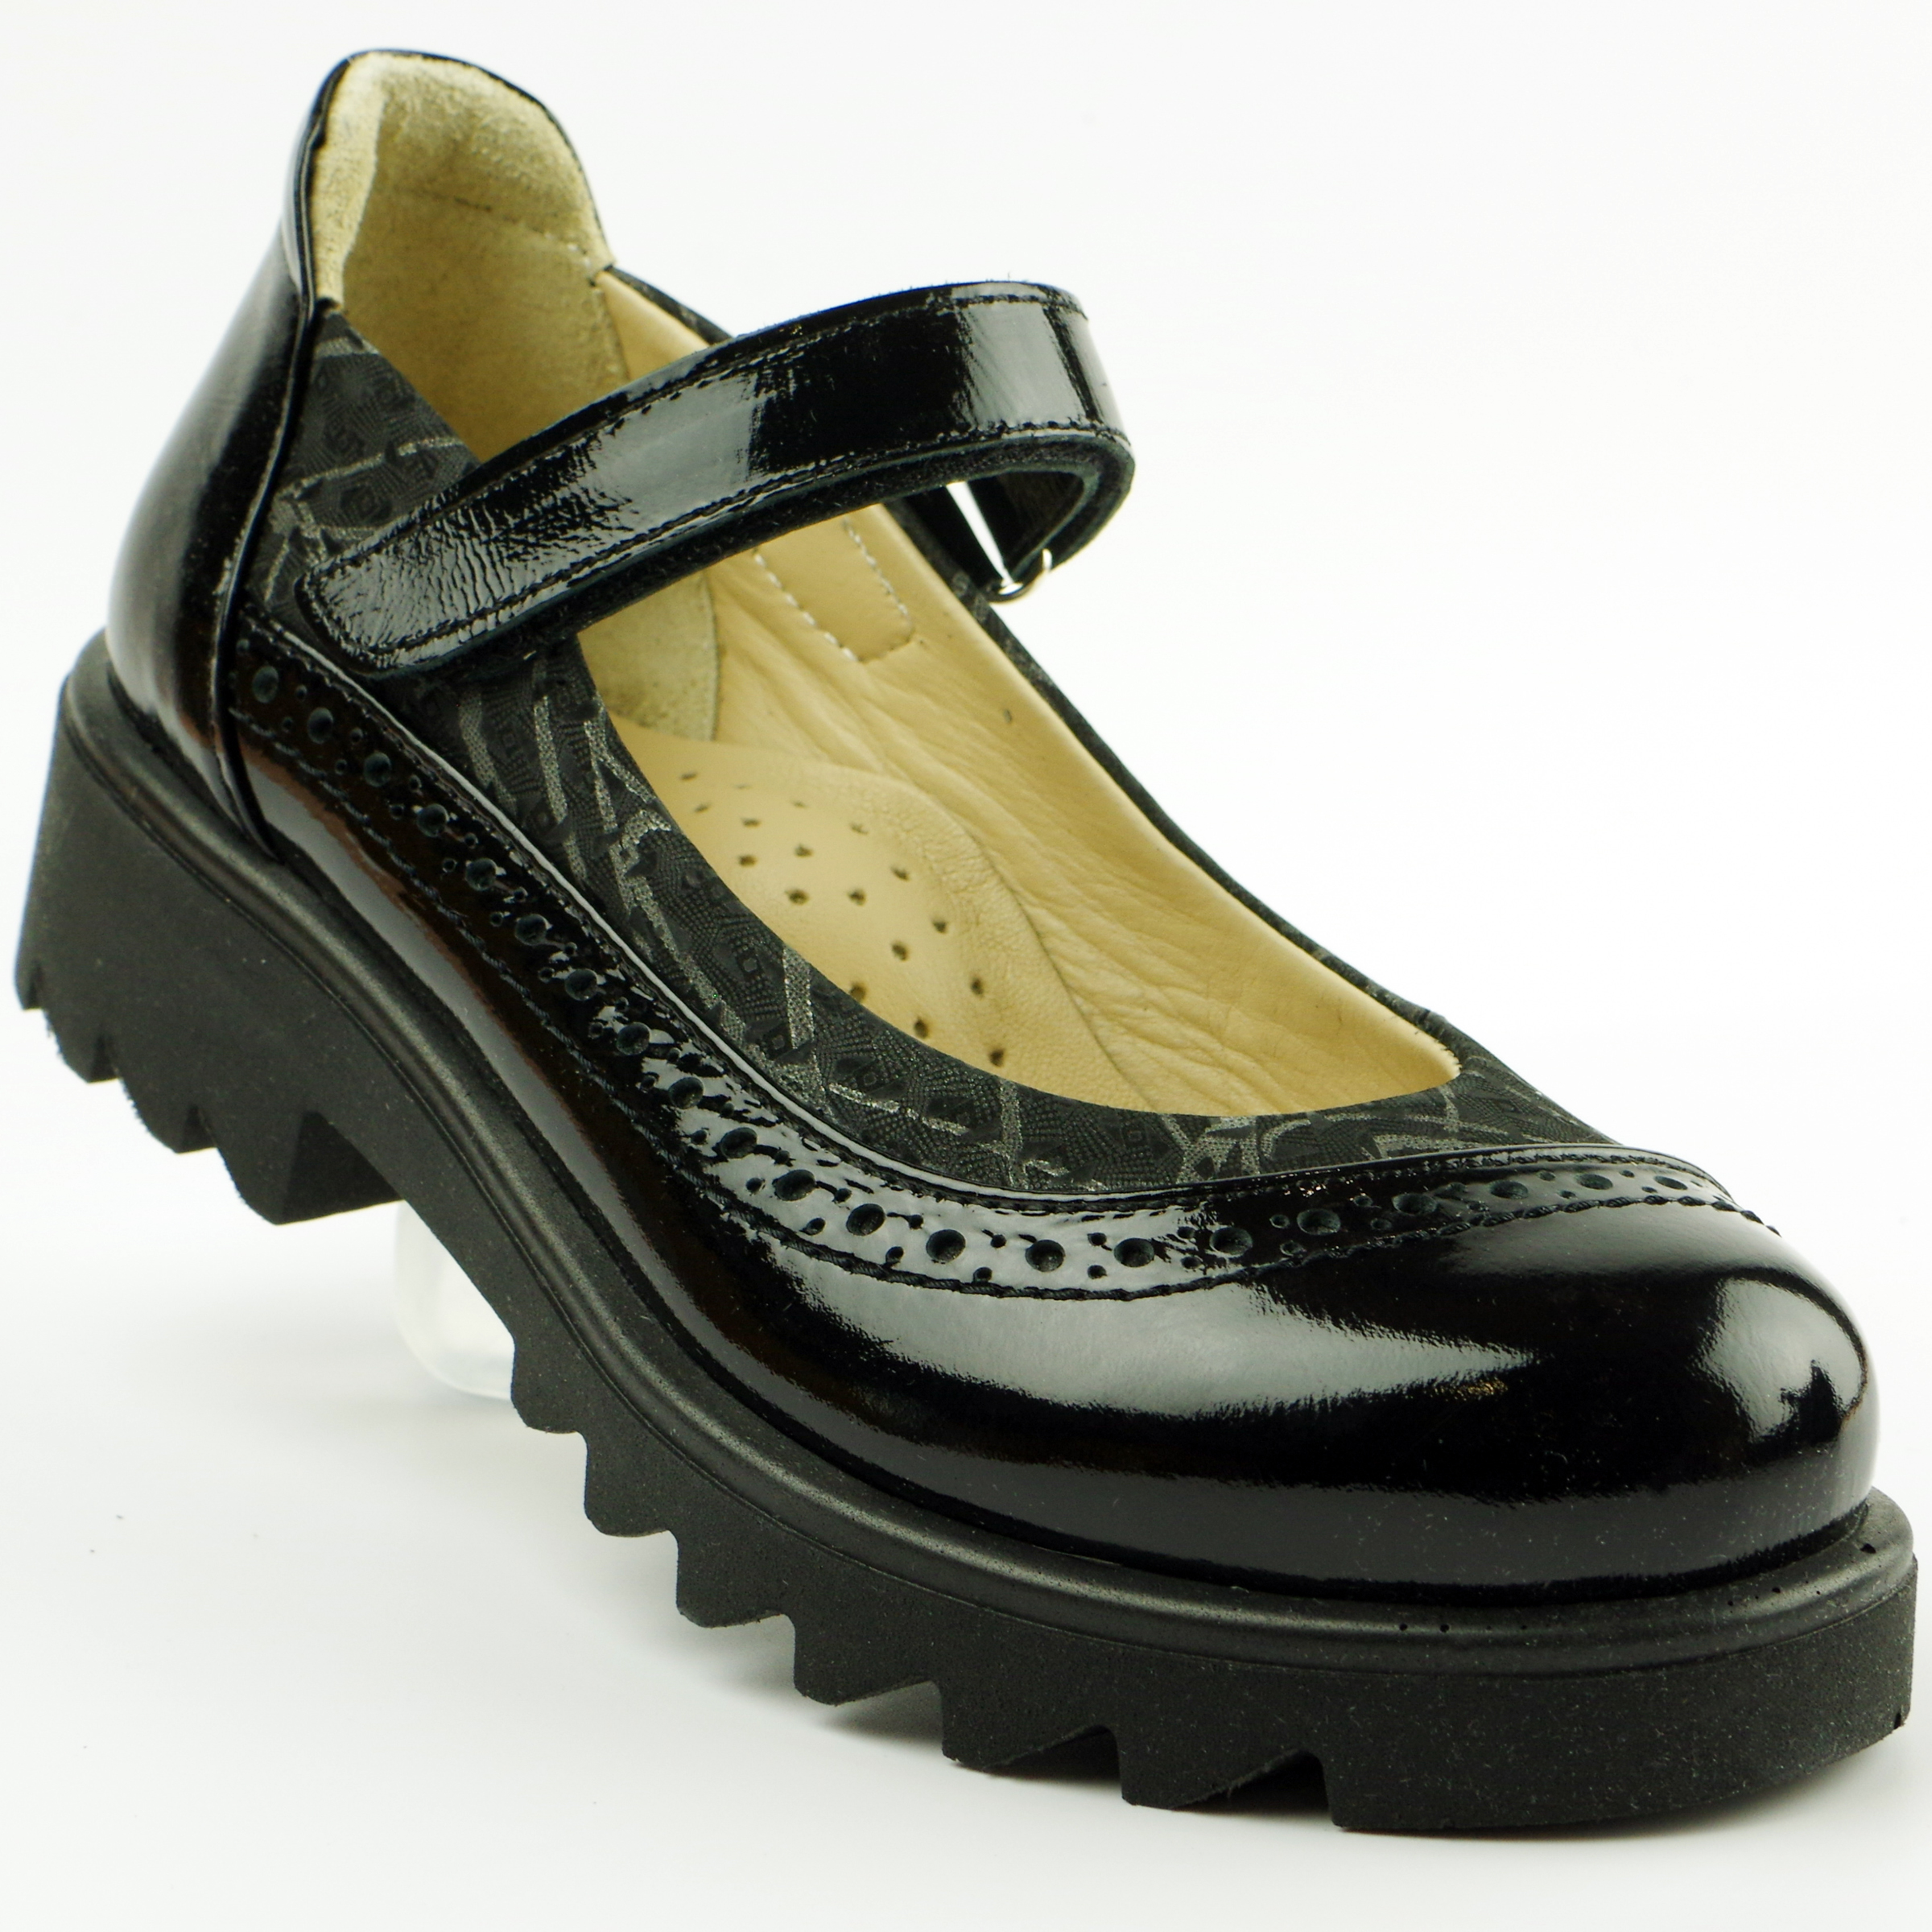 Туфлі дитячі (2116) для дівчинки, матеріал Натуральна шкіра, Чорний колір, 31-36 розміри – Sole Kids. Фото 1